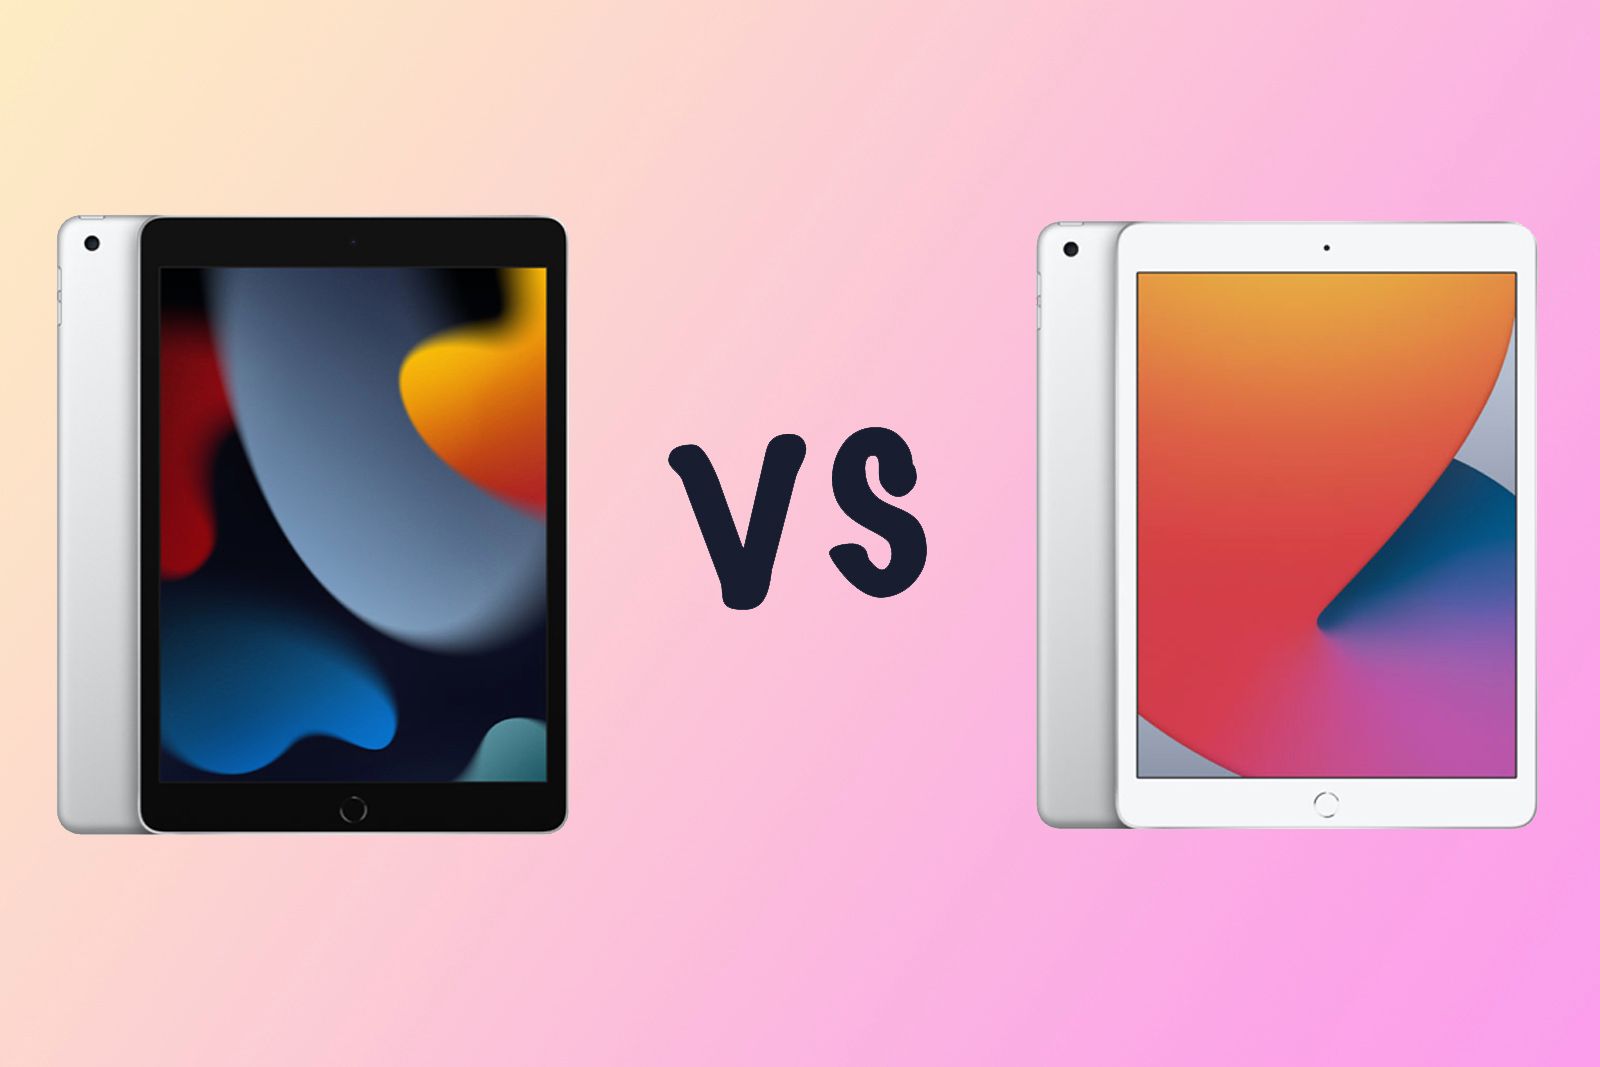 Apple iPad 10.2 (9th gen) vs iPad 10.2 (8th gen) differences